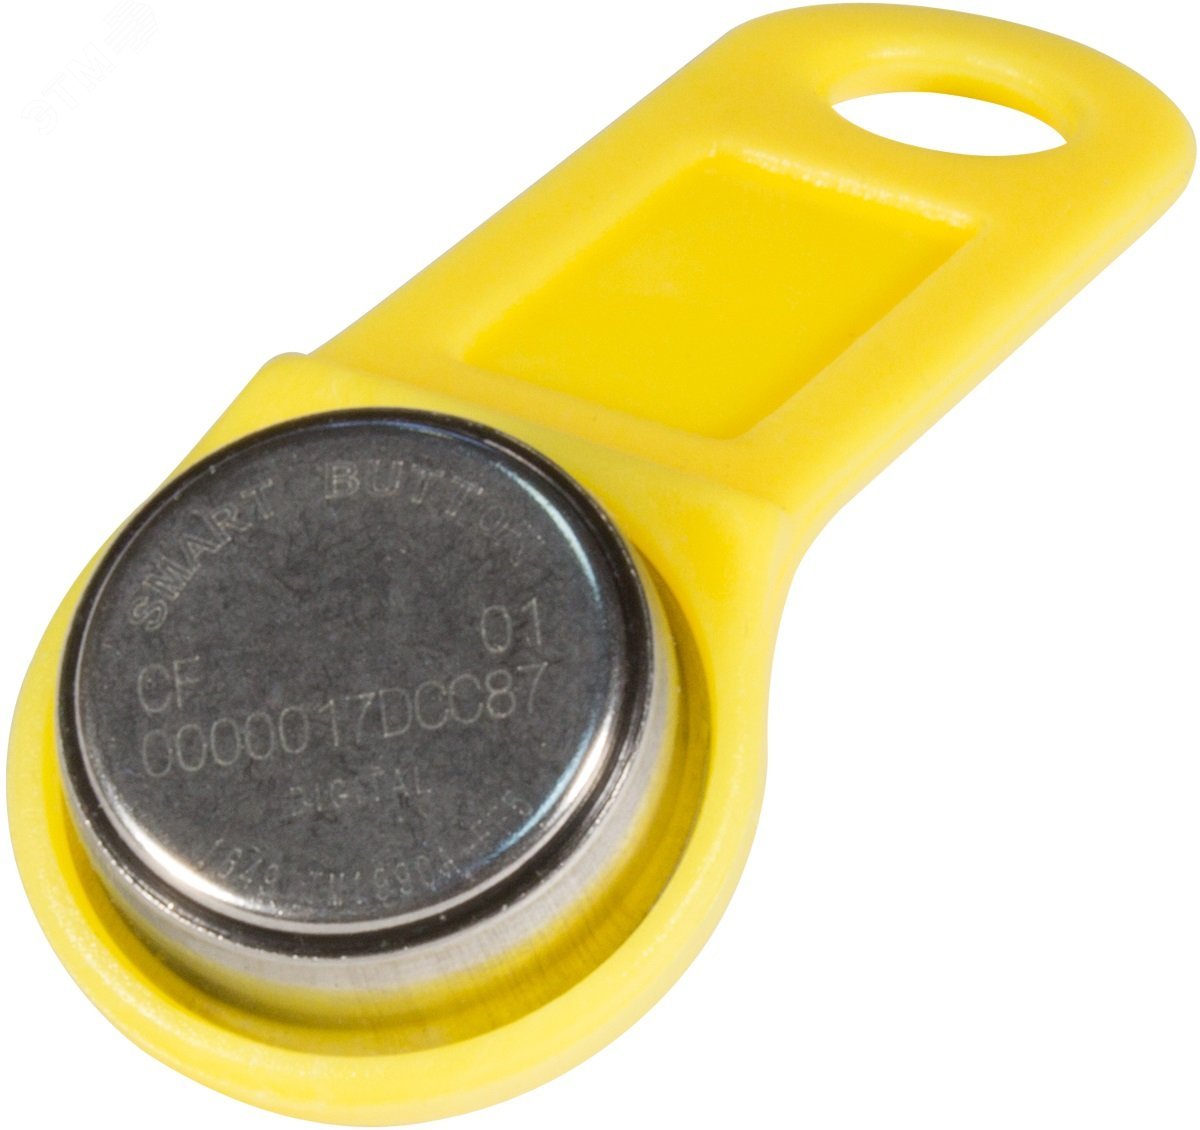 Ключ Touch memory DS 1990A - F5 цвет желтый DS 1990 желтый SLINEX